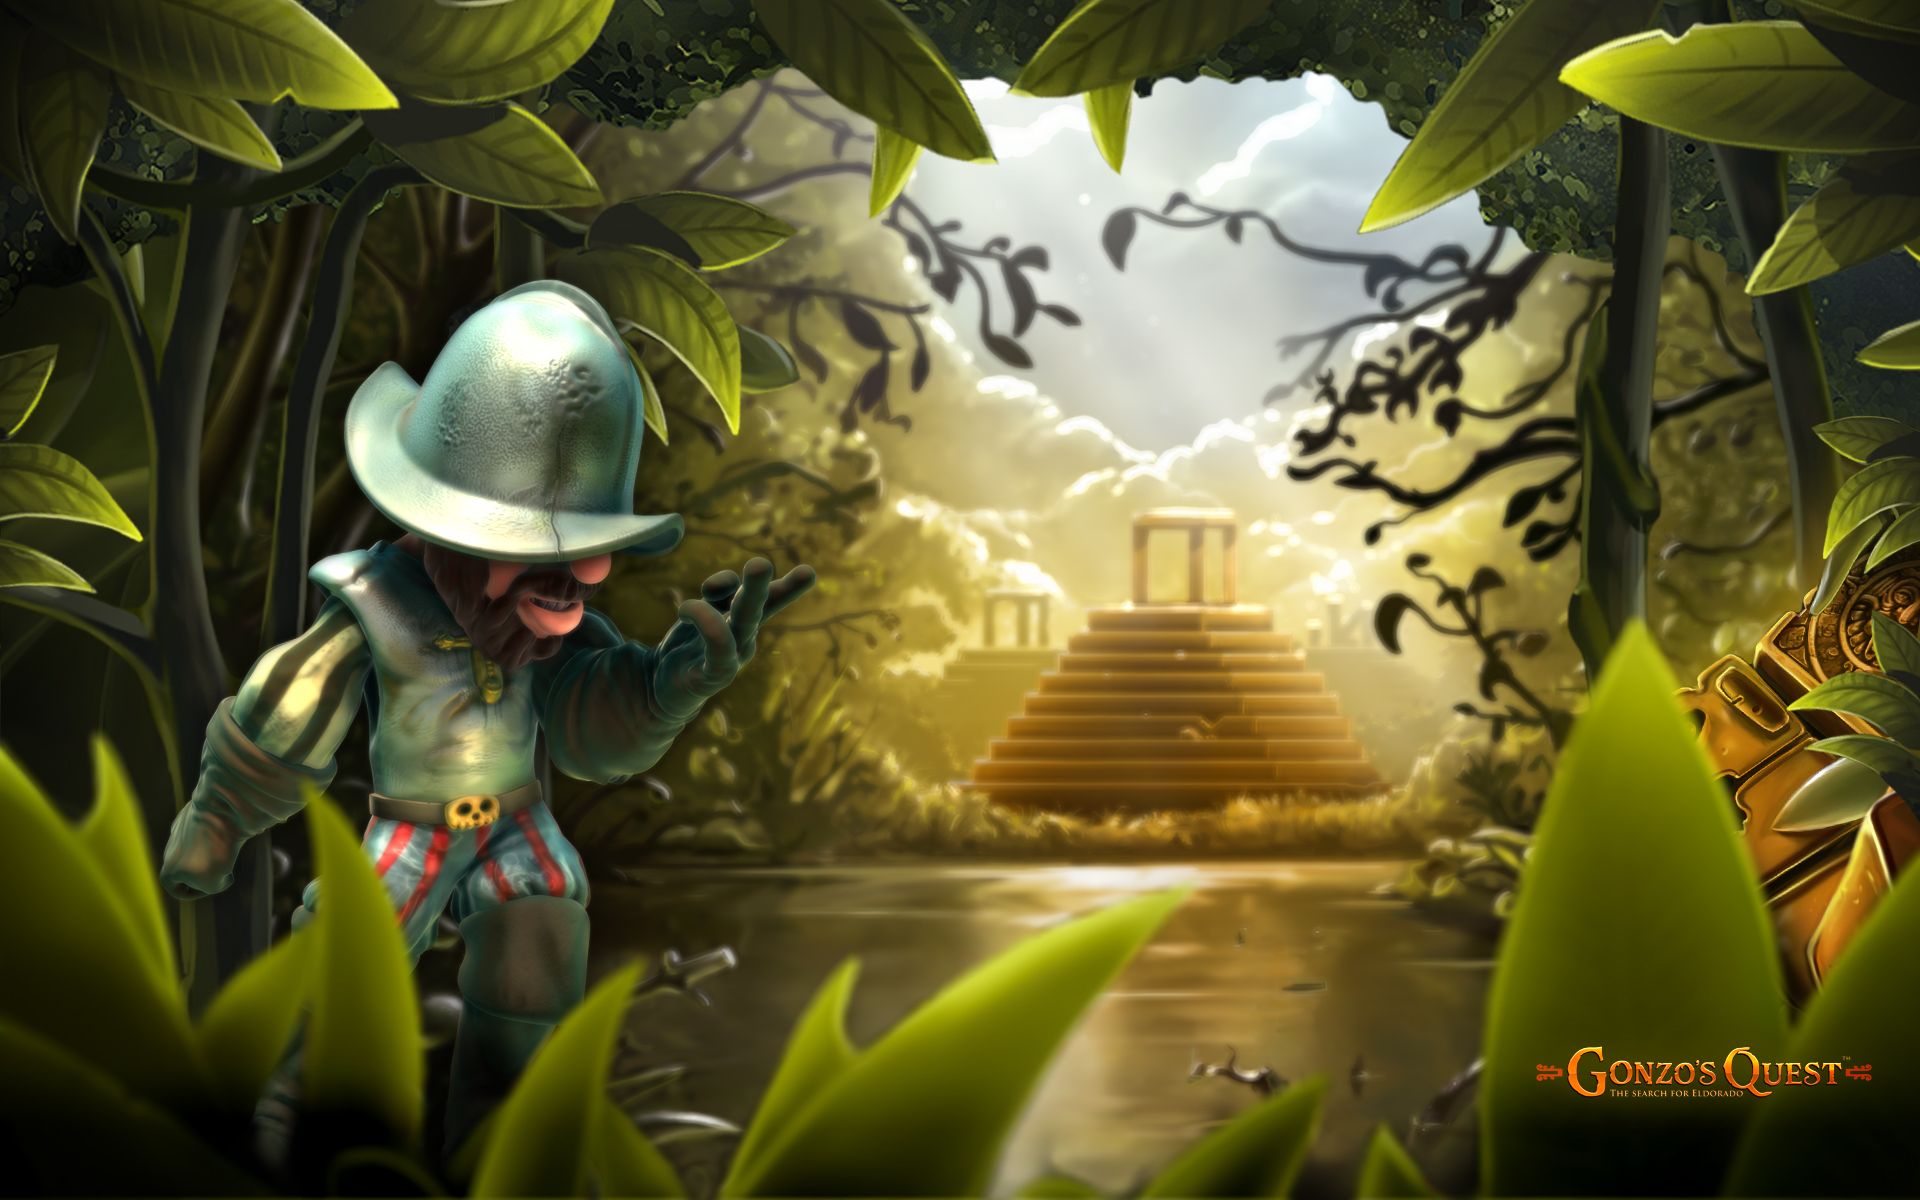 Gonzo\'s Quest là một trò chơi đầy mạo hiểm và thú vị, nơi bạn sẽ được đưa vào cuộc phiêu lưu giải đố tại Nam Mỹ. Hãy tham gia và cùng Gonzo tìm ra kho báu của những người Maya bằng cách giải quyết những câu đố và bí ẩn khó hiểu trên đường đi.